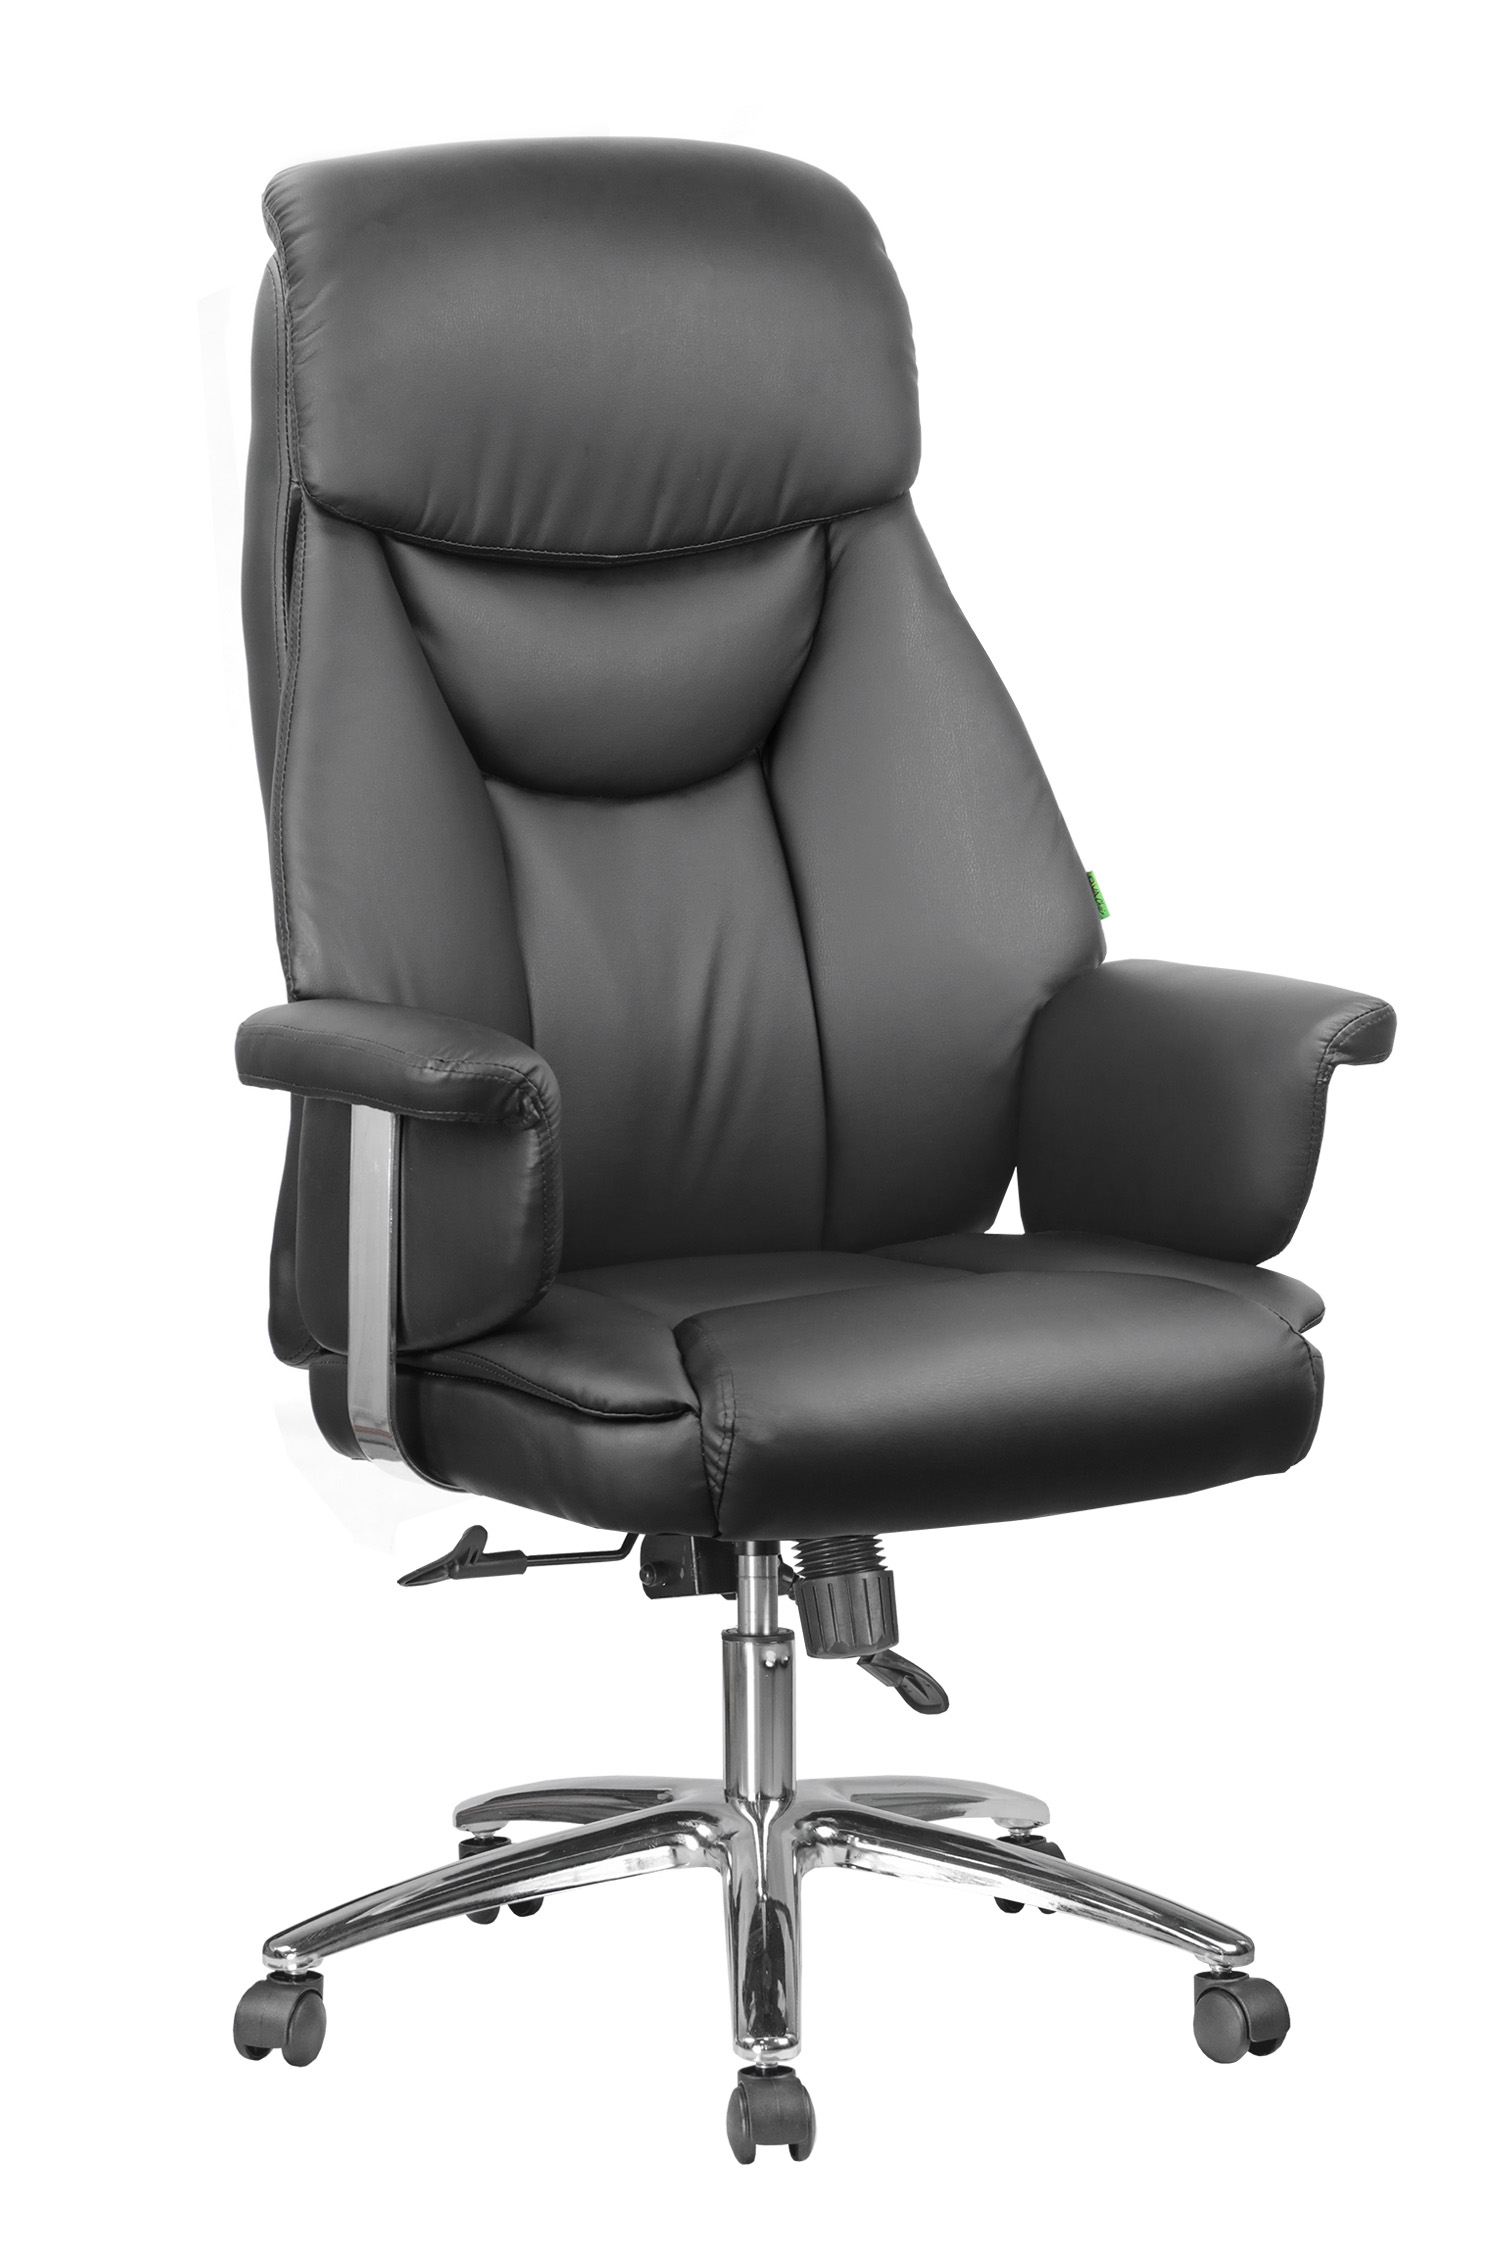 Кресло для руководителя ЧАИР 9501 эко (CHAIR 9501)